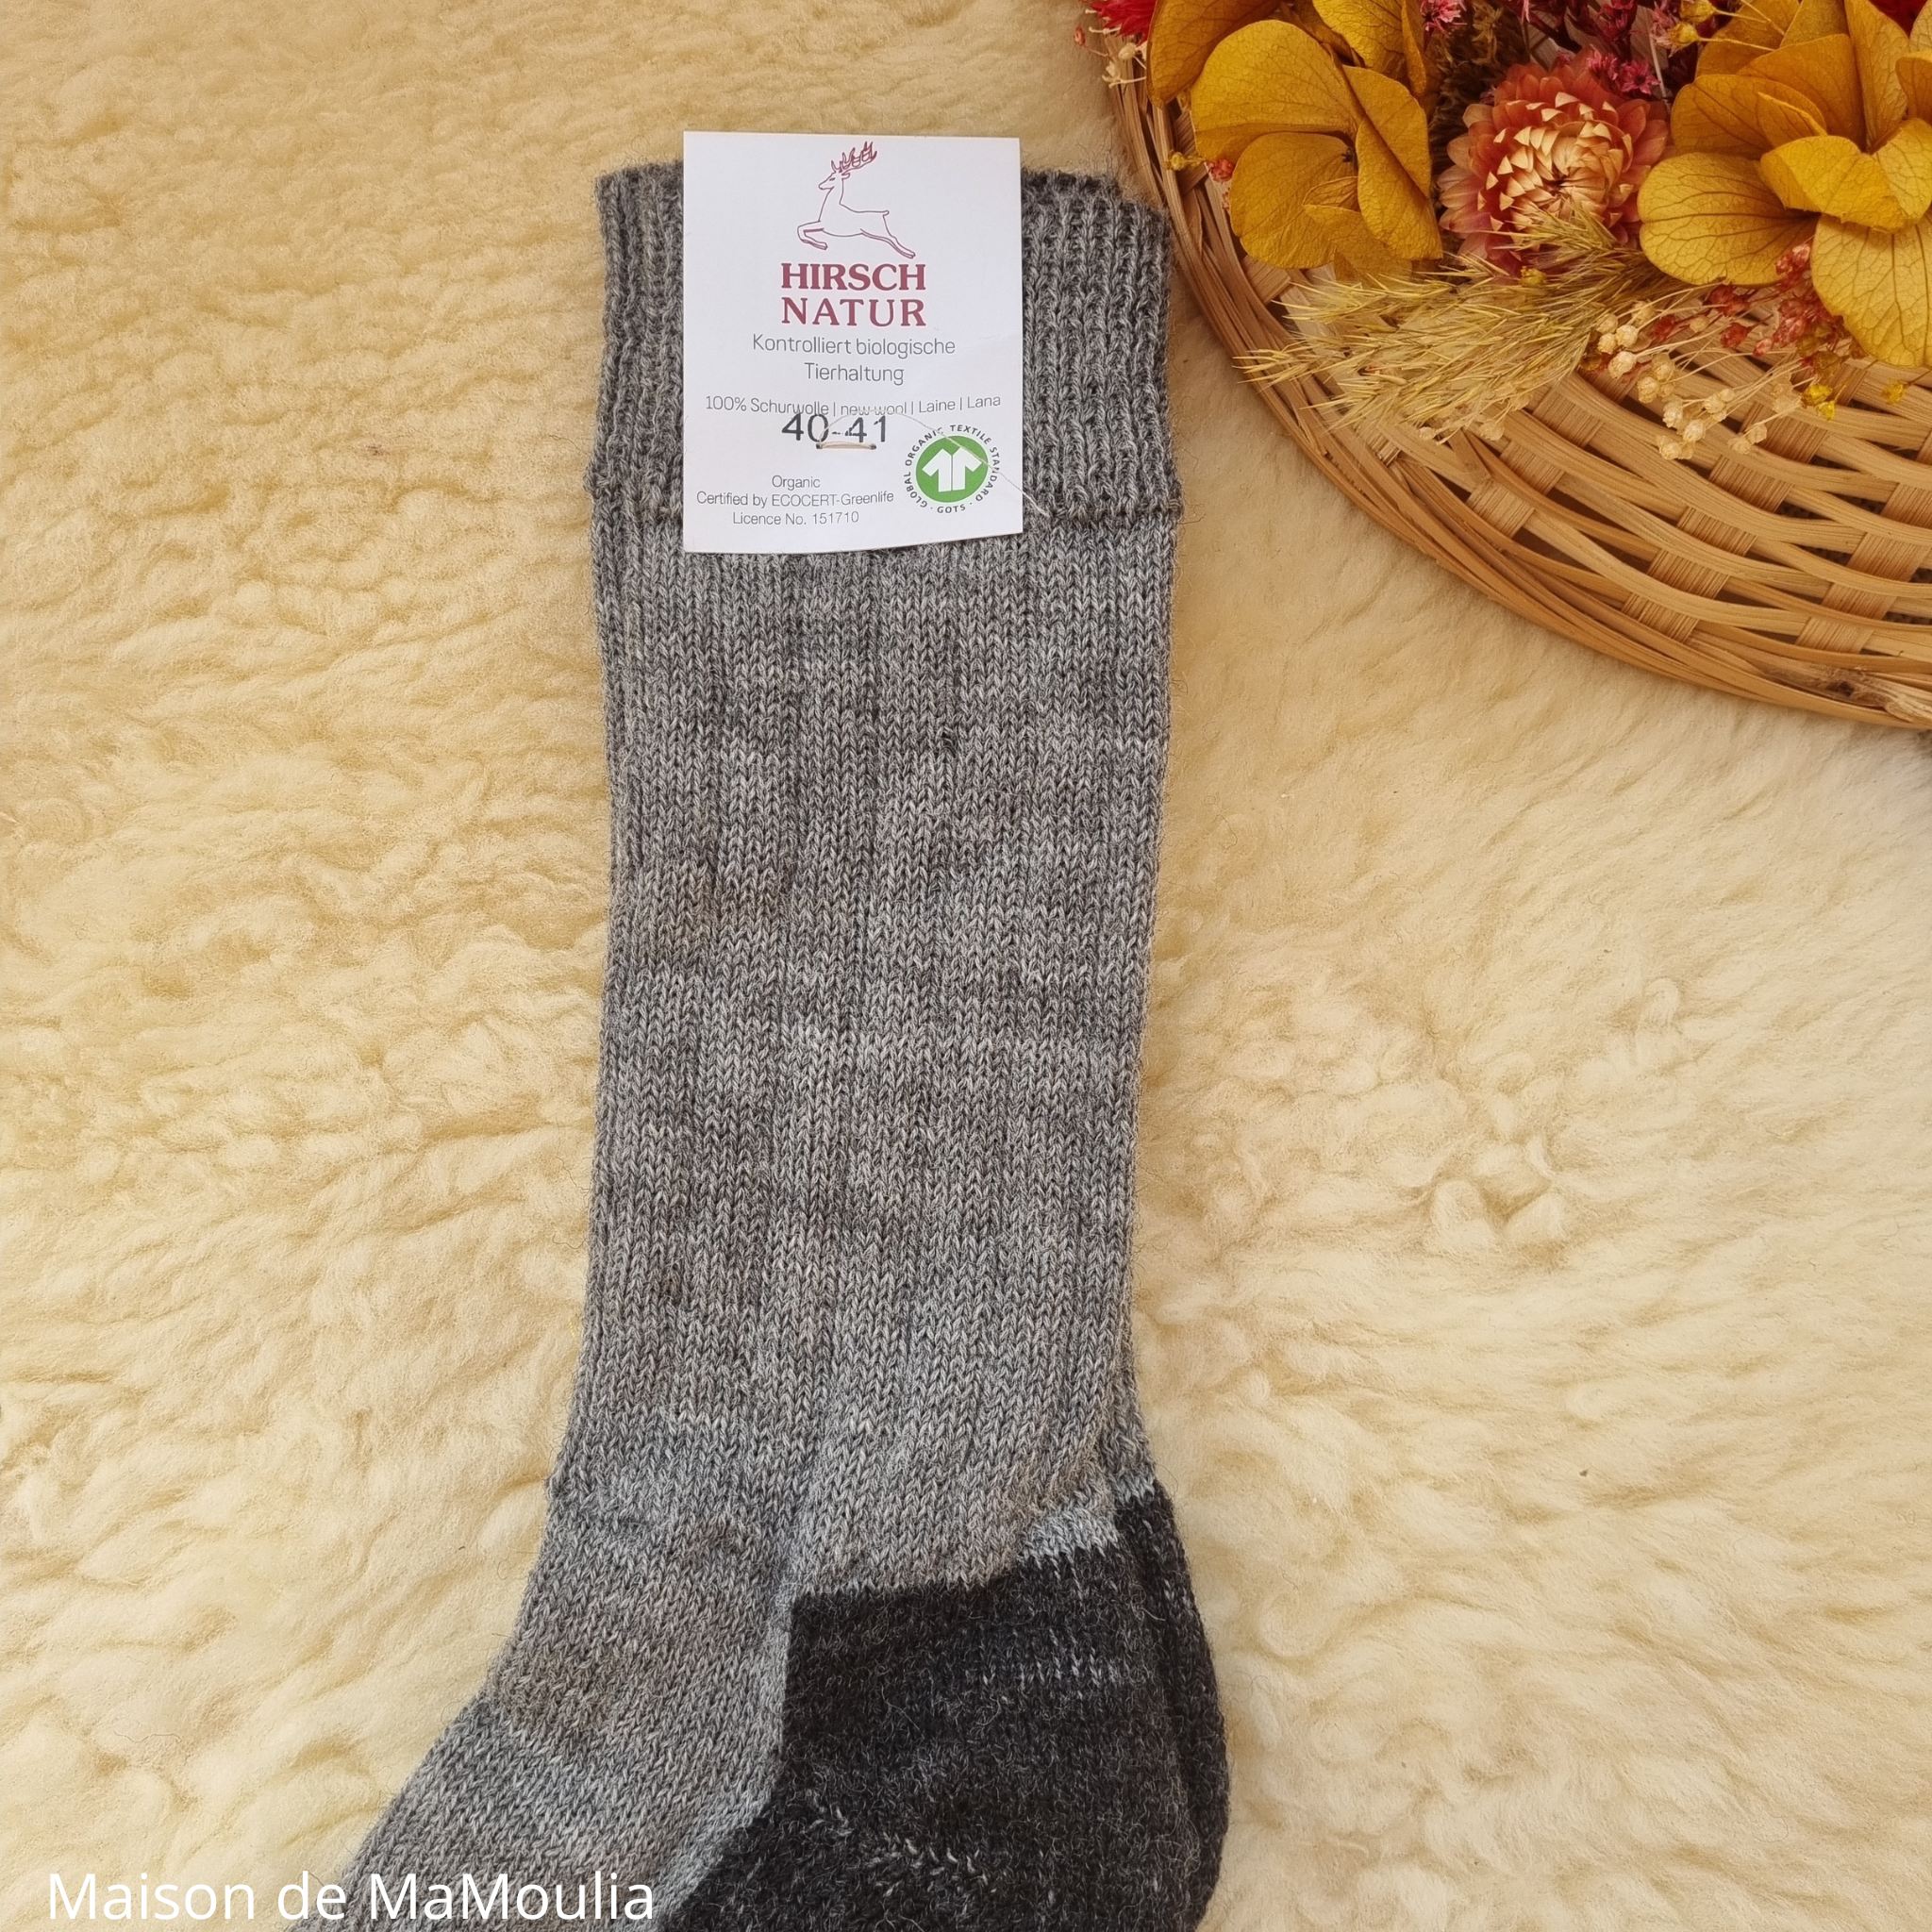 050-chaussettes-tracking-pure-laine-bio-ecologique-hirsch-natur-maison-de-mamoulia-adulte-homme- gris